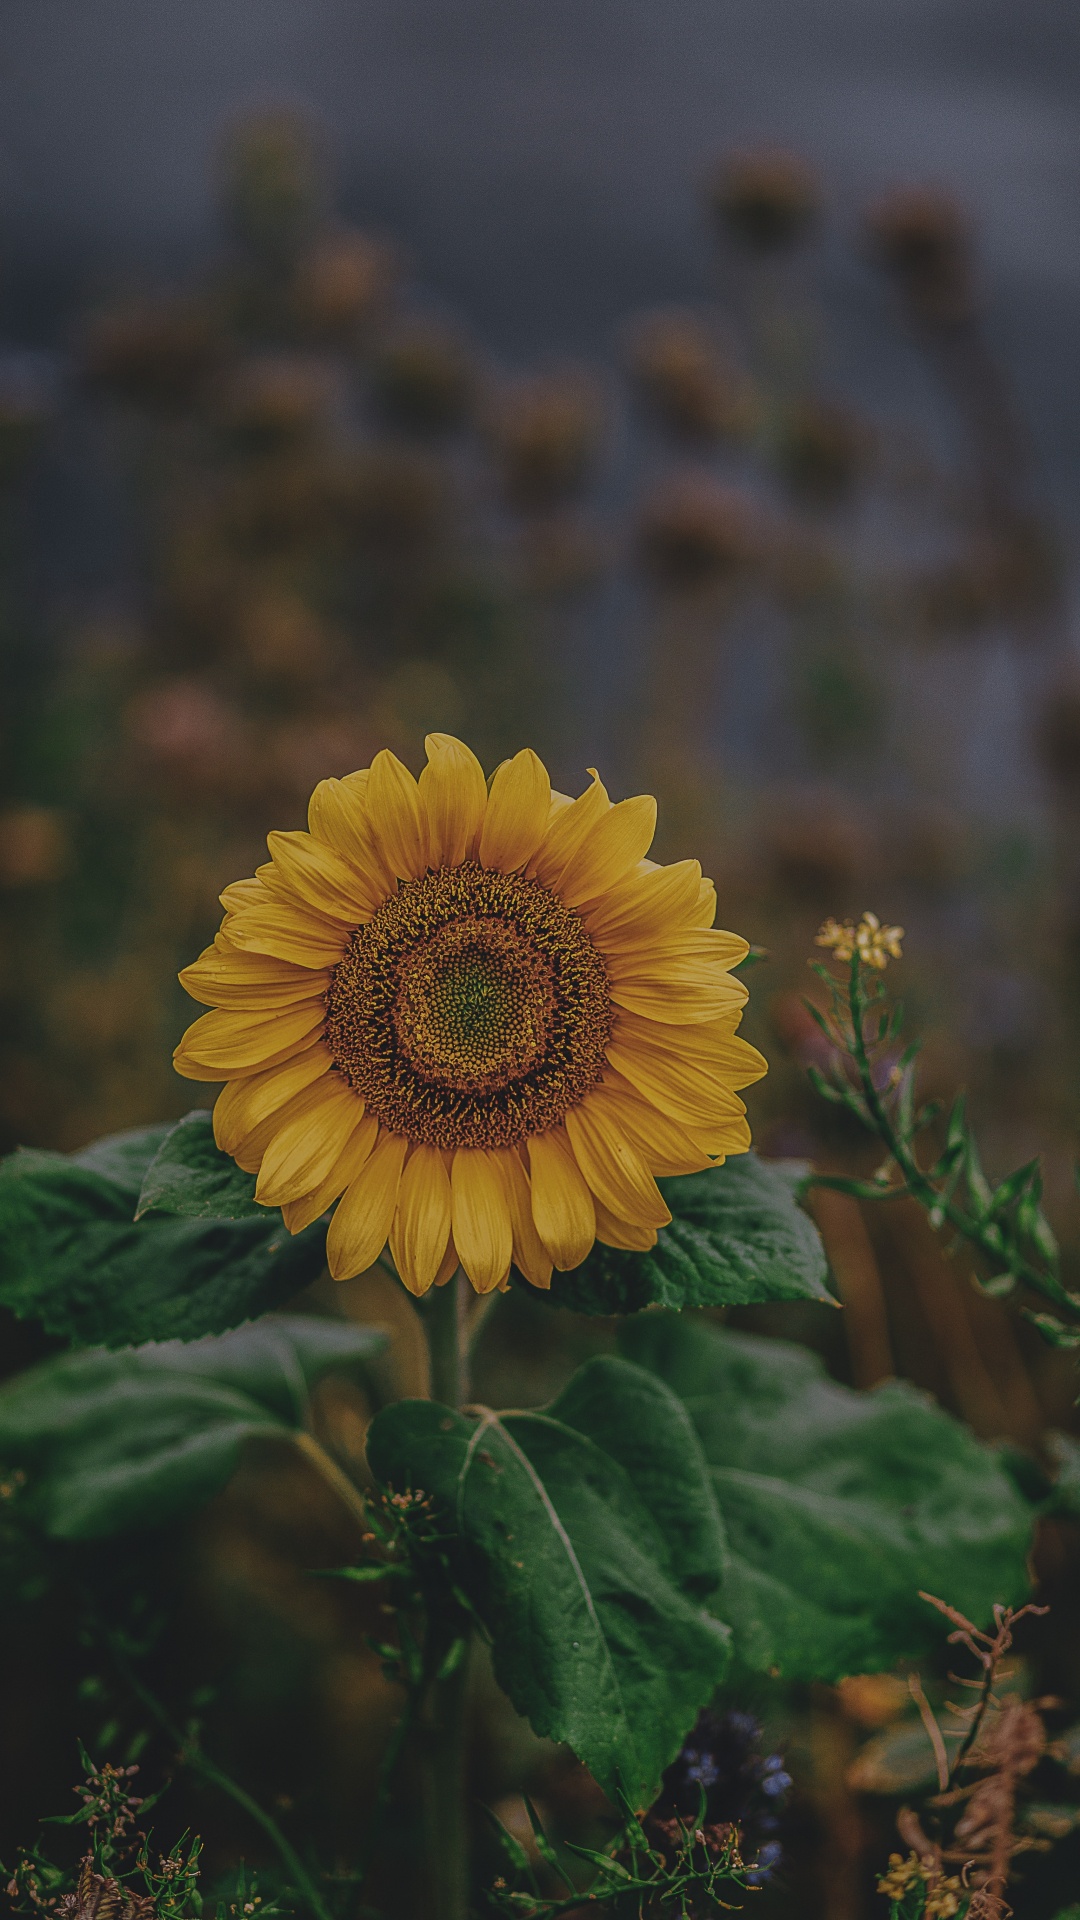 Yellow Sunflower in Tilt Shift Lens. Wallpaper in 1080x1920 Resolution